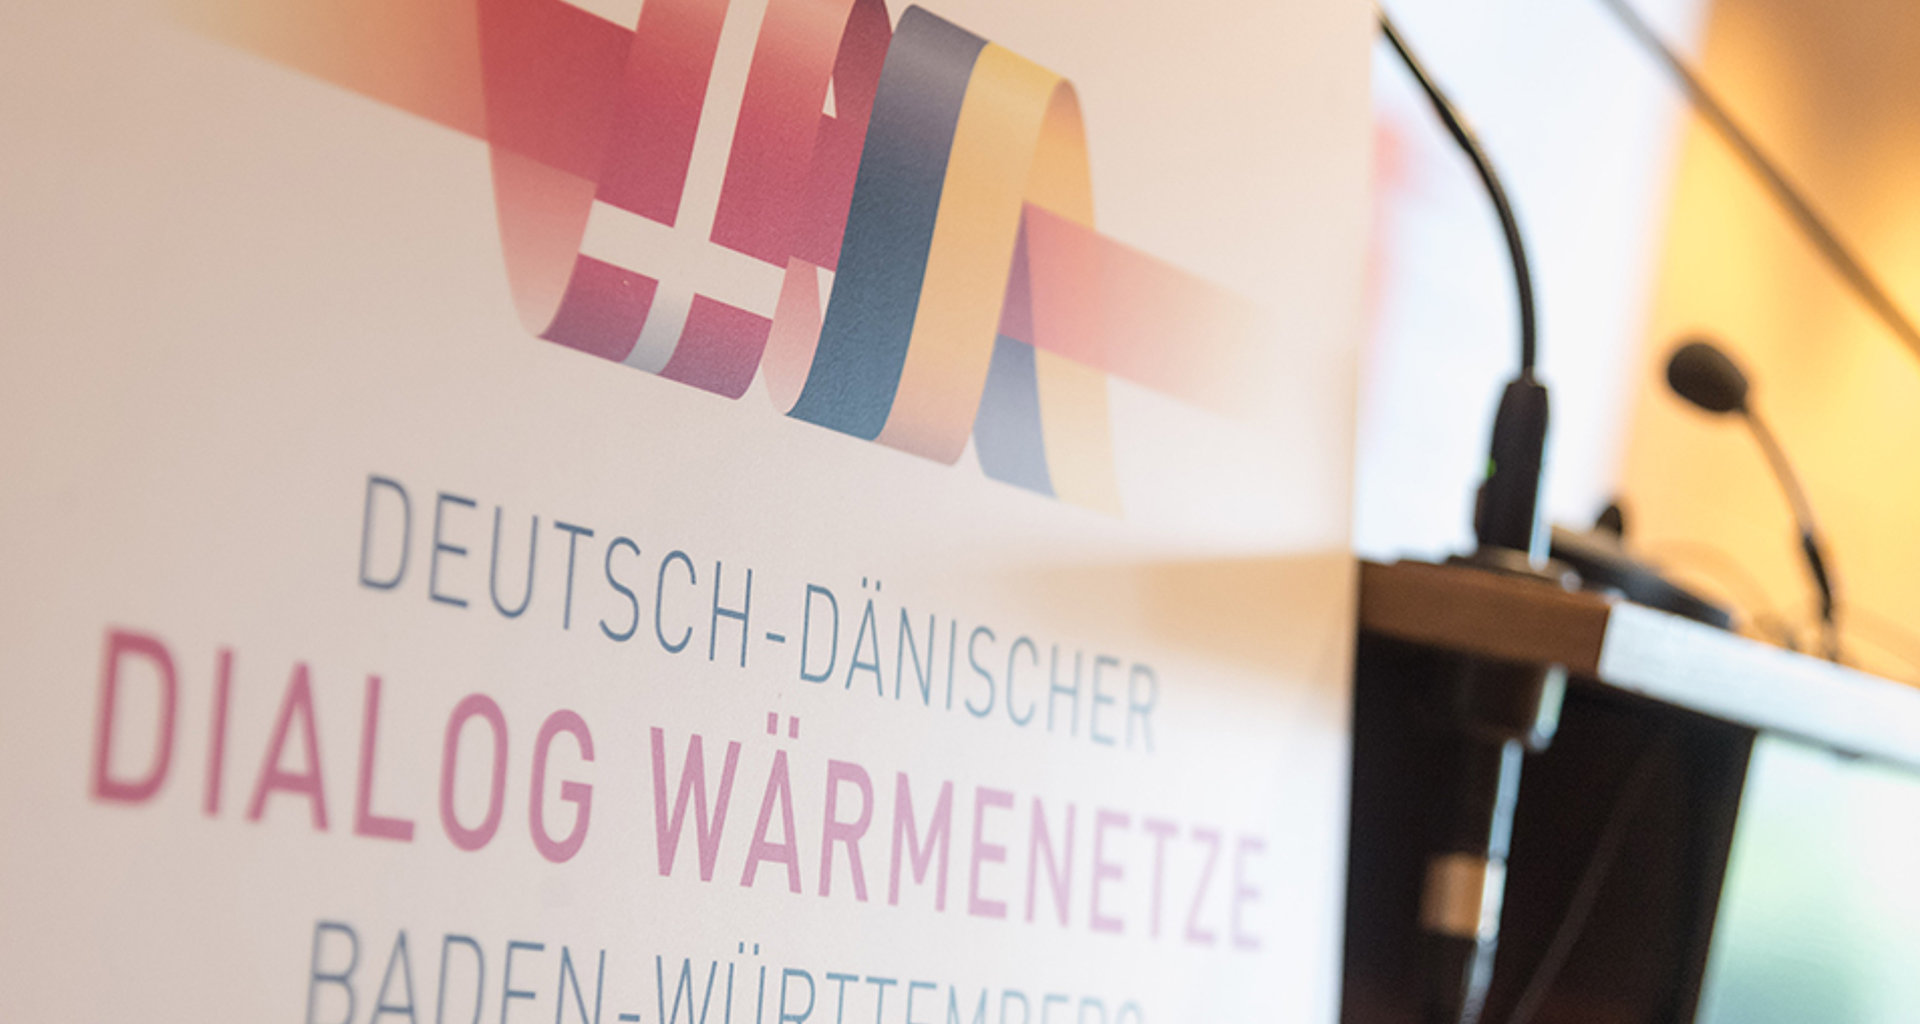 Logo des "Deutsch Dänischen Dialogs Wärmenetze Baden-Württemberg" neben einem Rednerpult.